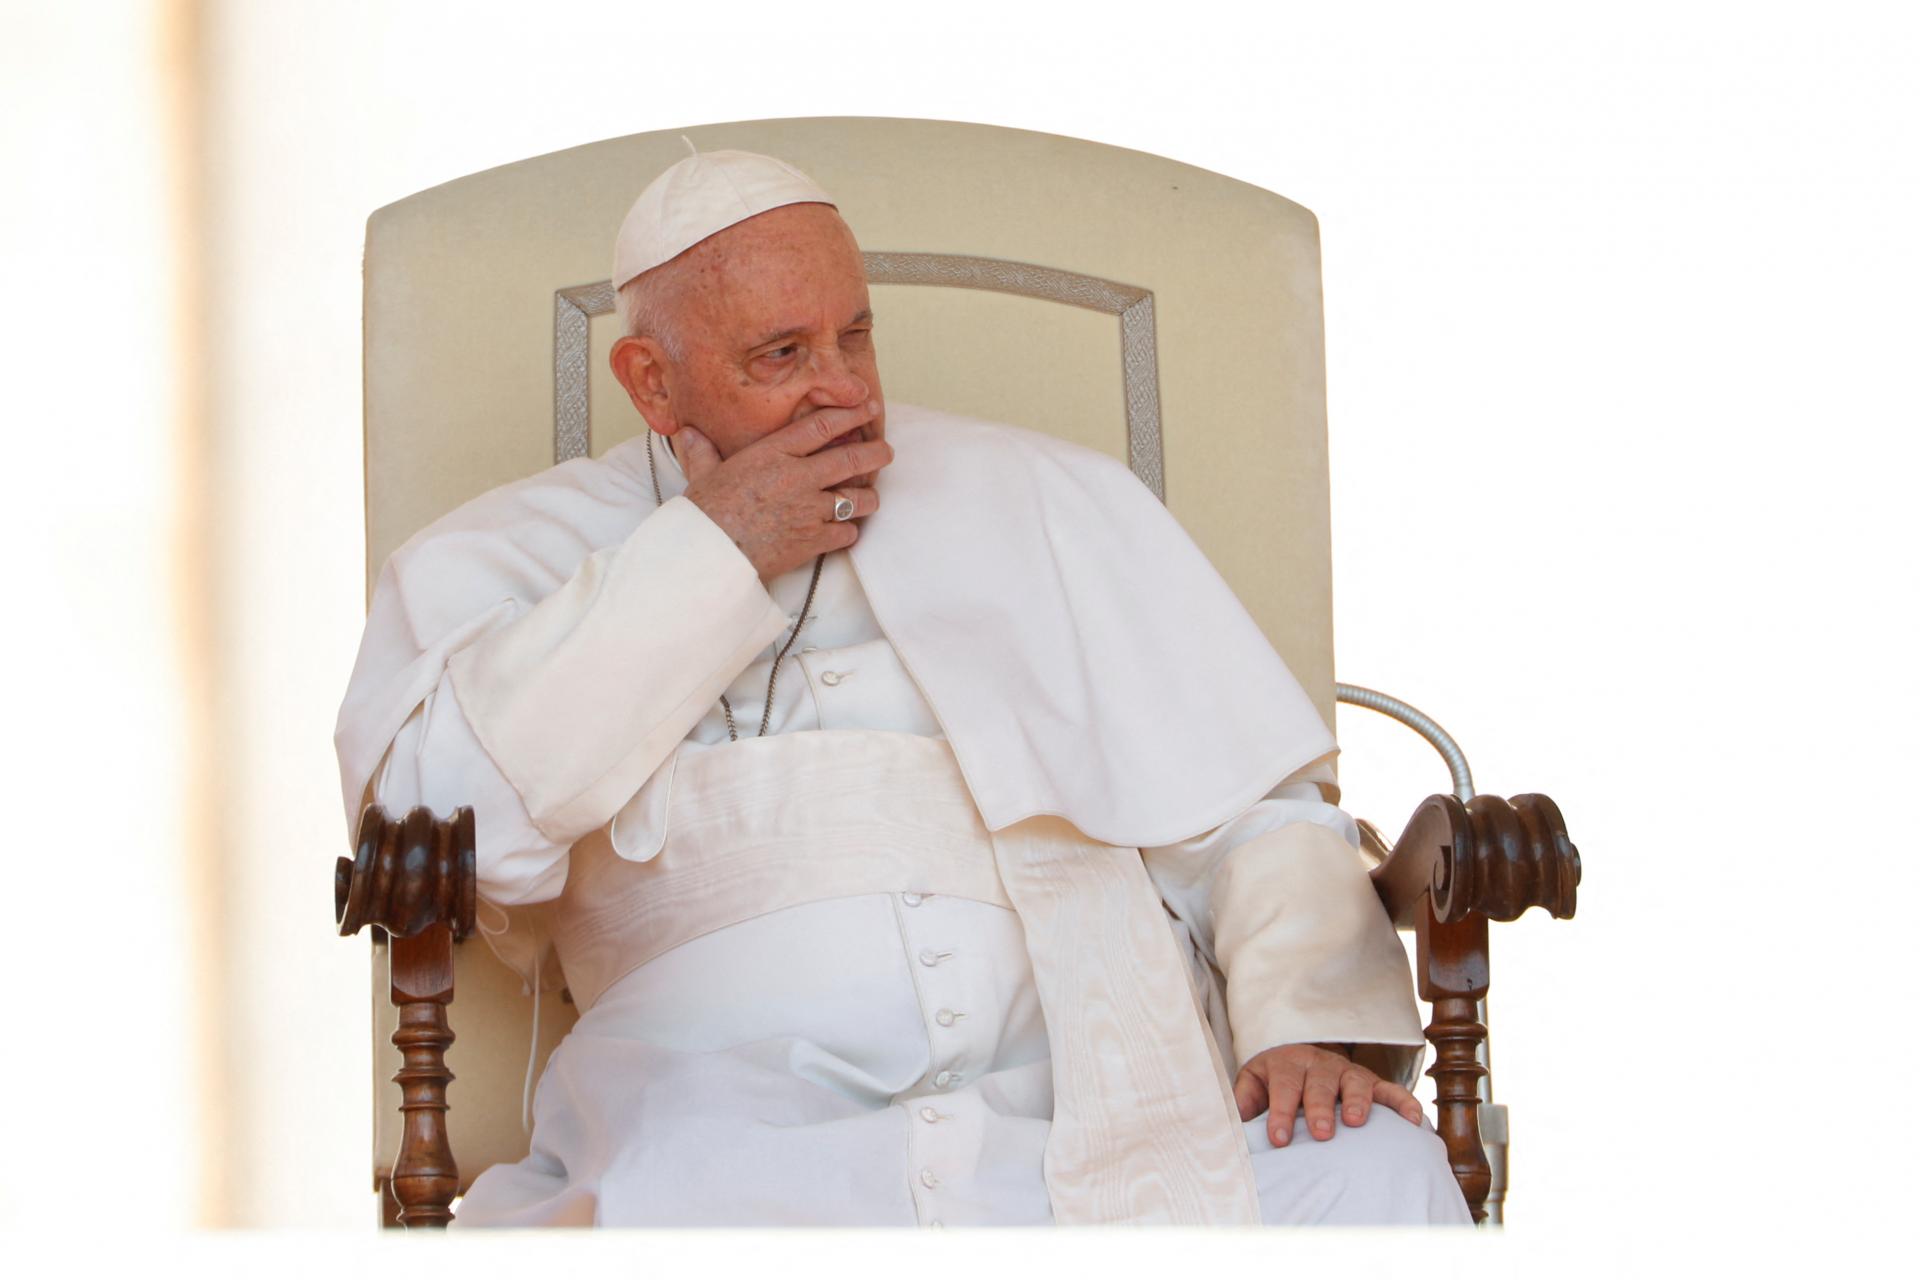 Jeho štýl riadenia diecézy mnohých odradil. Pápež František prijal rezignáciu štrasburského arcibiskupa